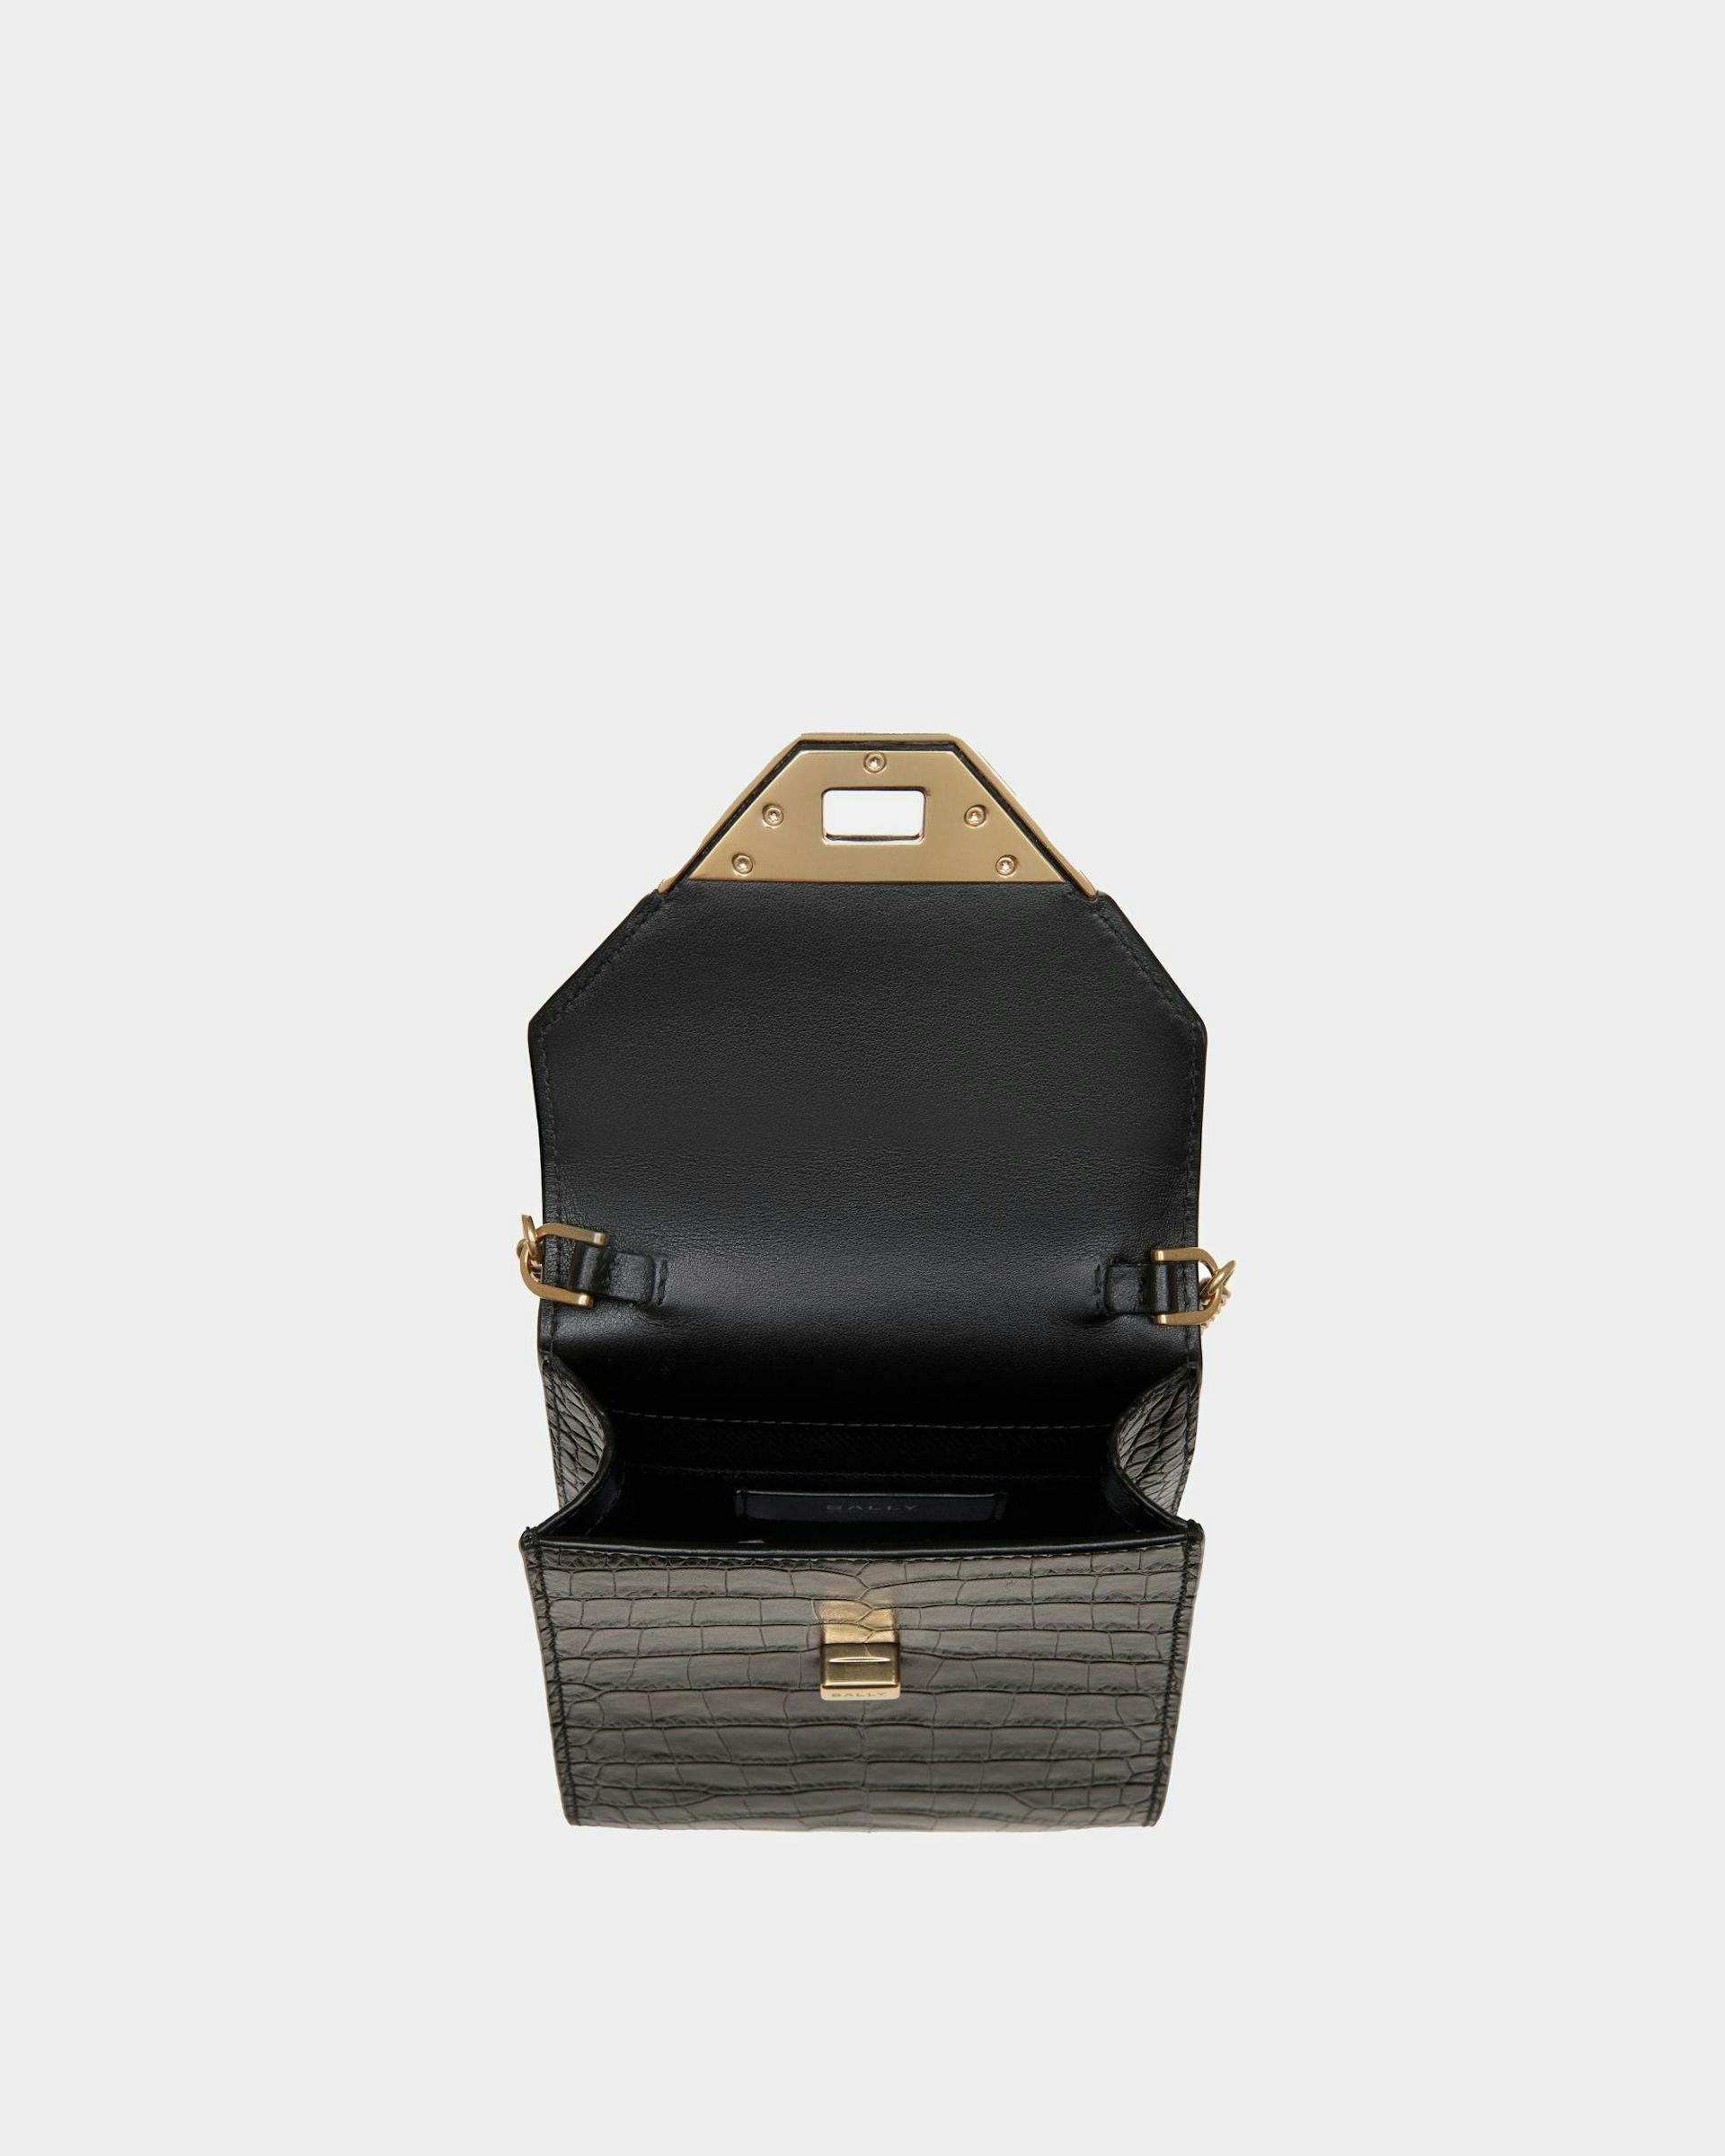 Women's Tilt Phone Bag in Black Crocodile Print Leather | Bally | Still Life Open / Inside